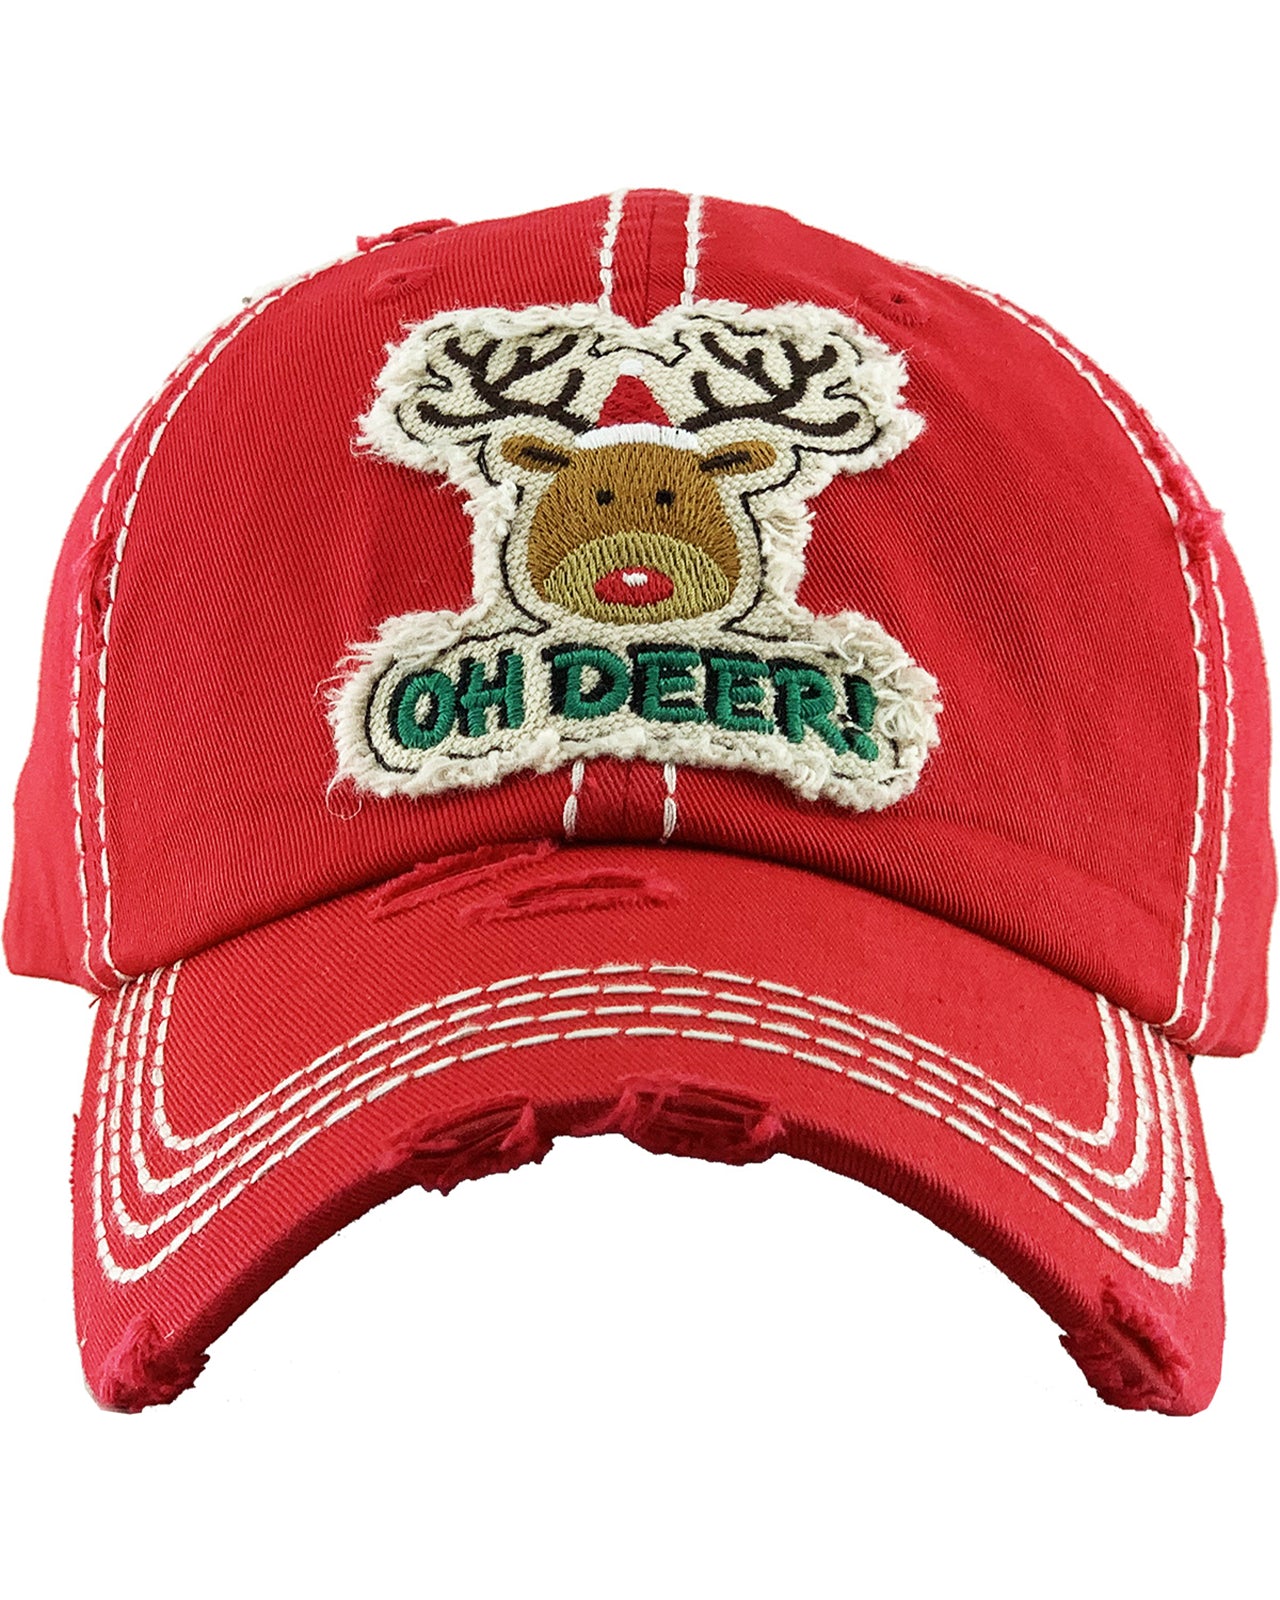 Oh Deer Hat - Red